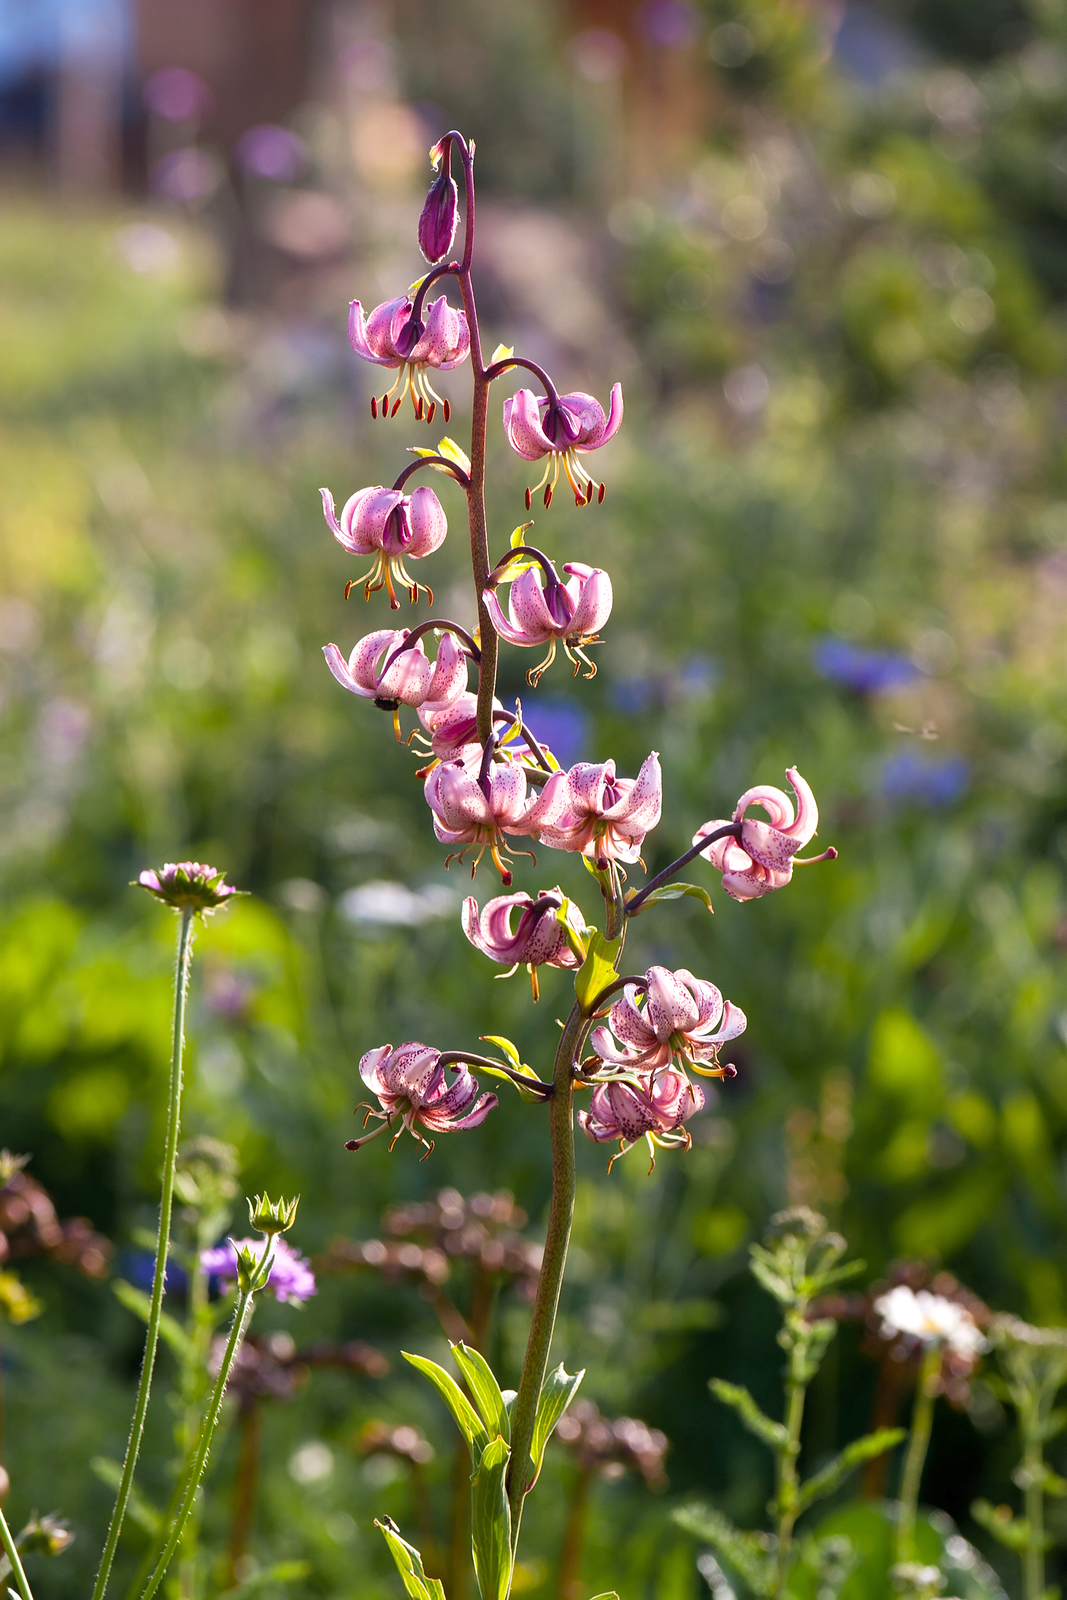 Fotografia prezentuje fioletowy kwiatostan lilii złotogłów na tle łąki.